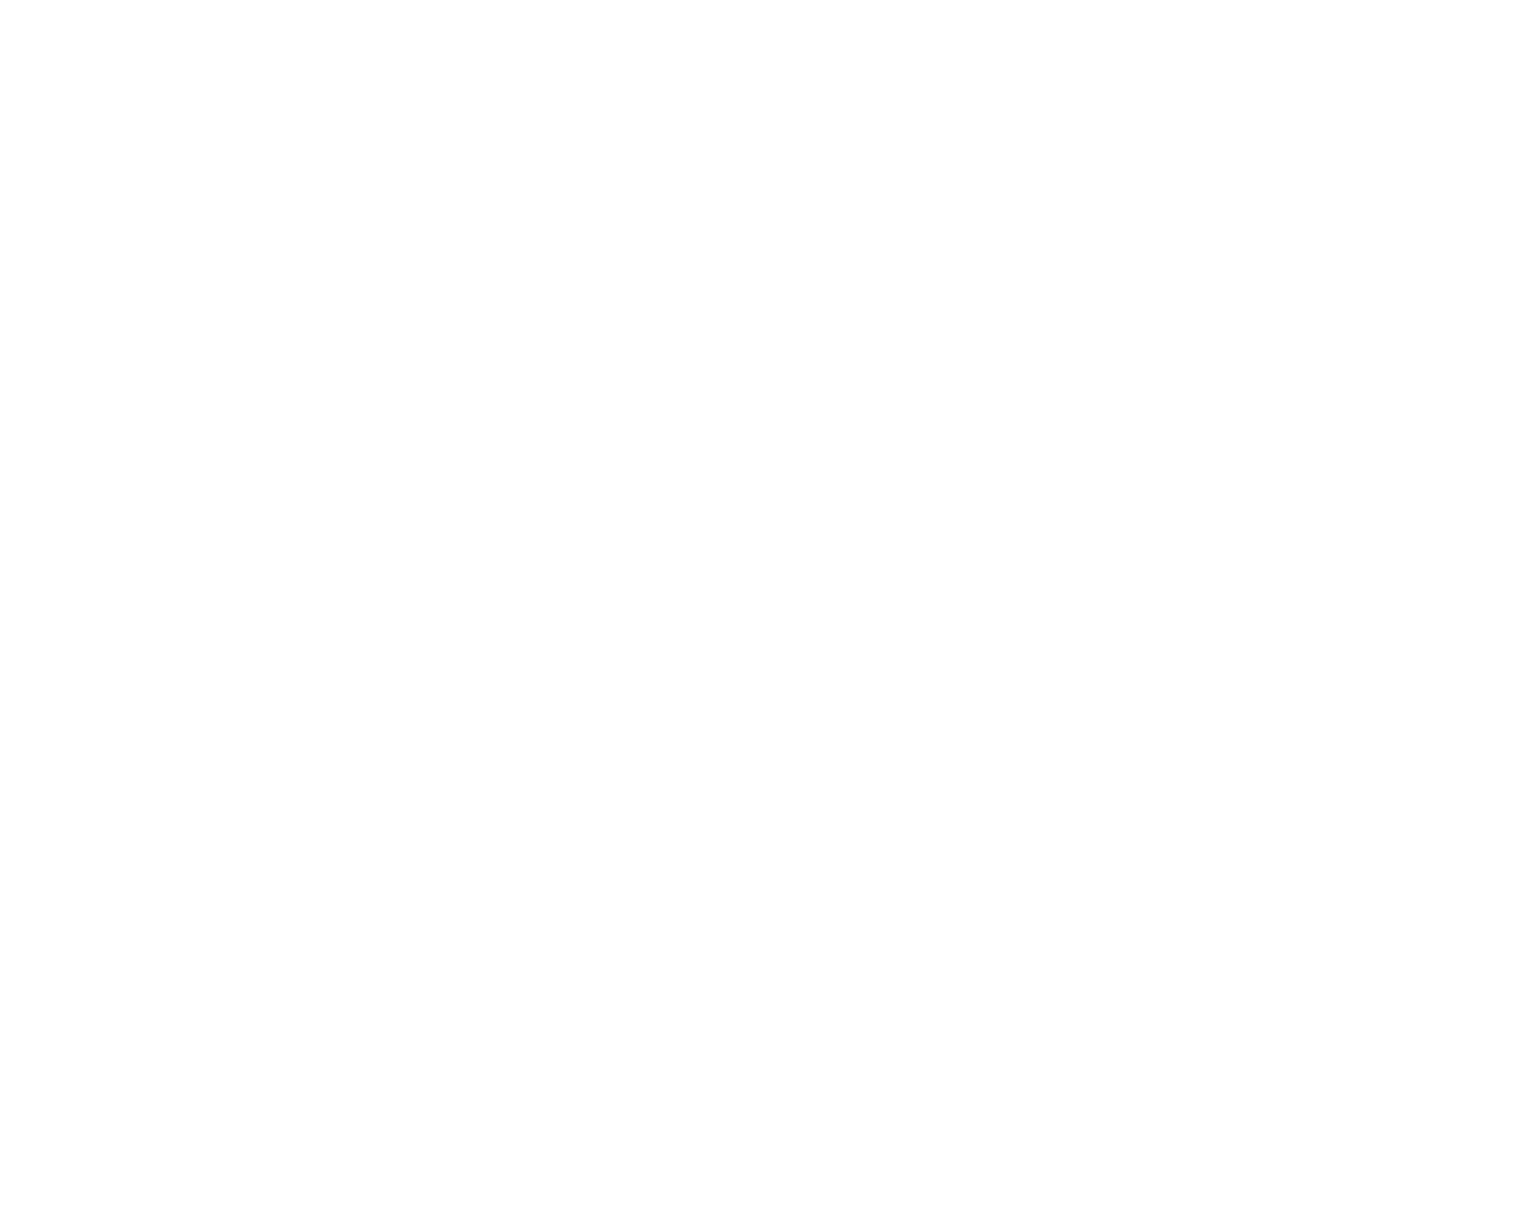 vtx_logo copy.png